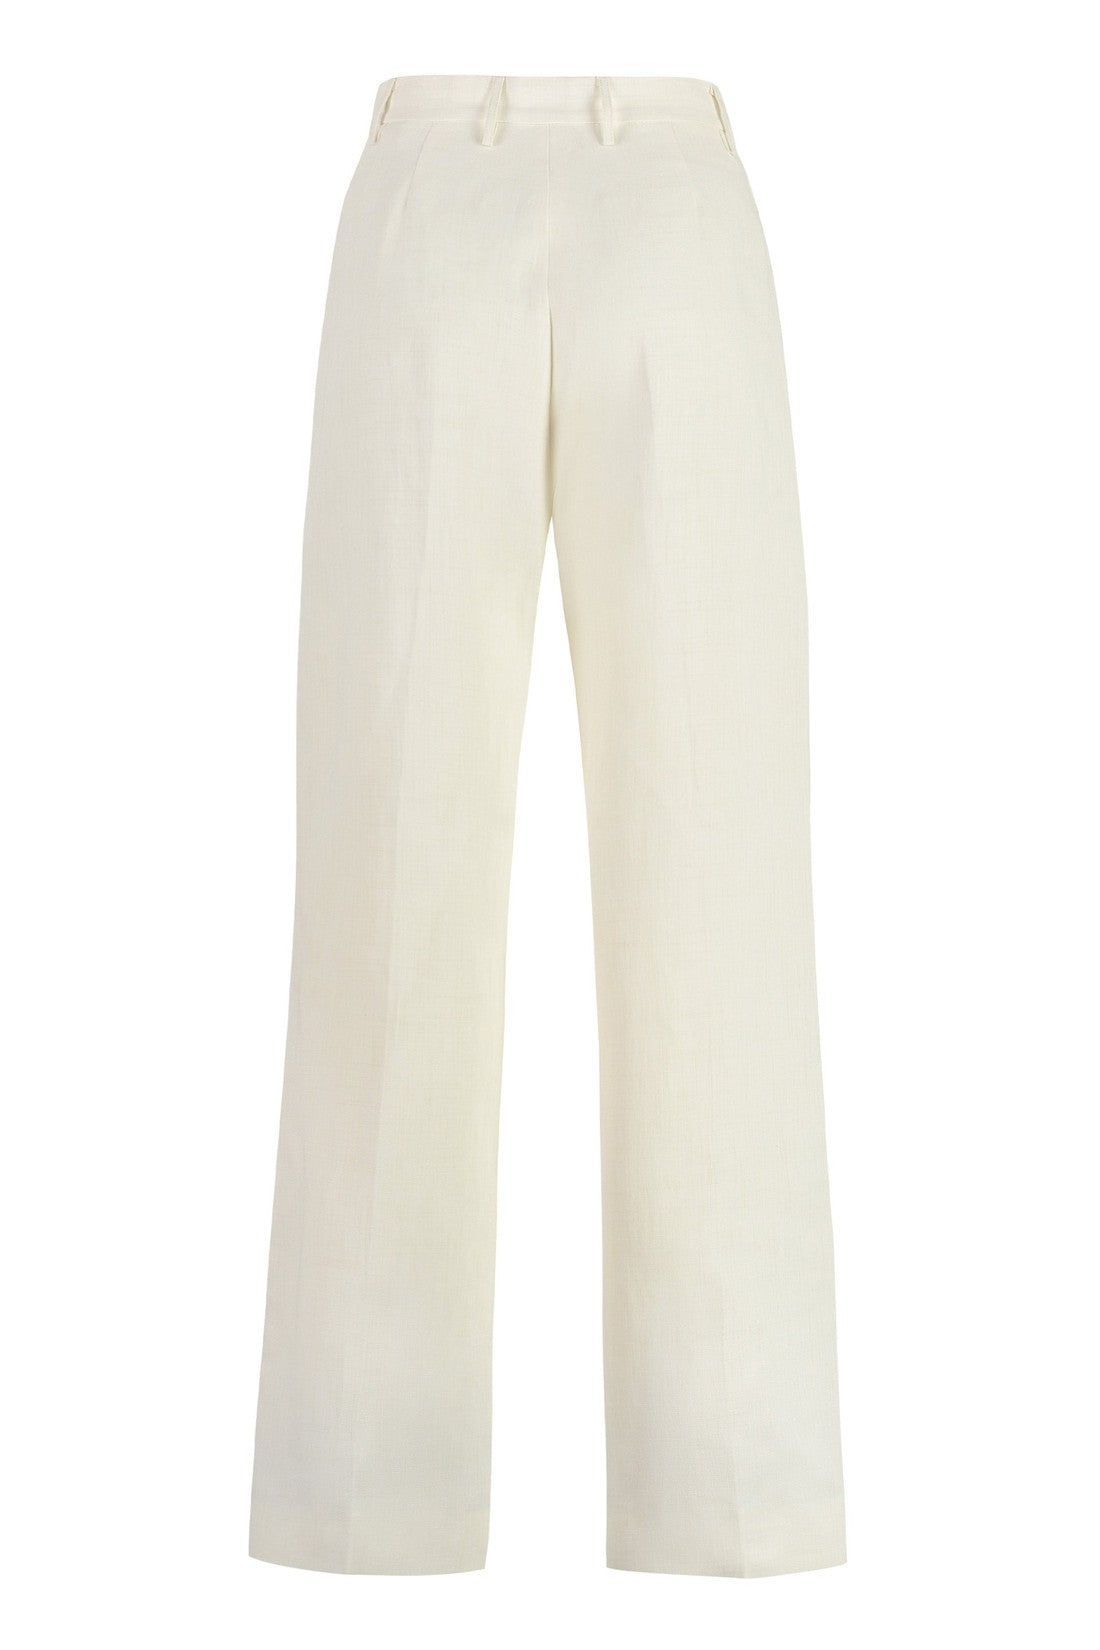 Fabiana Filippi-OUTLET-SALE-Linen blend trousers-ARCHIVIST